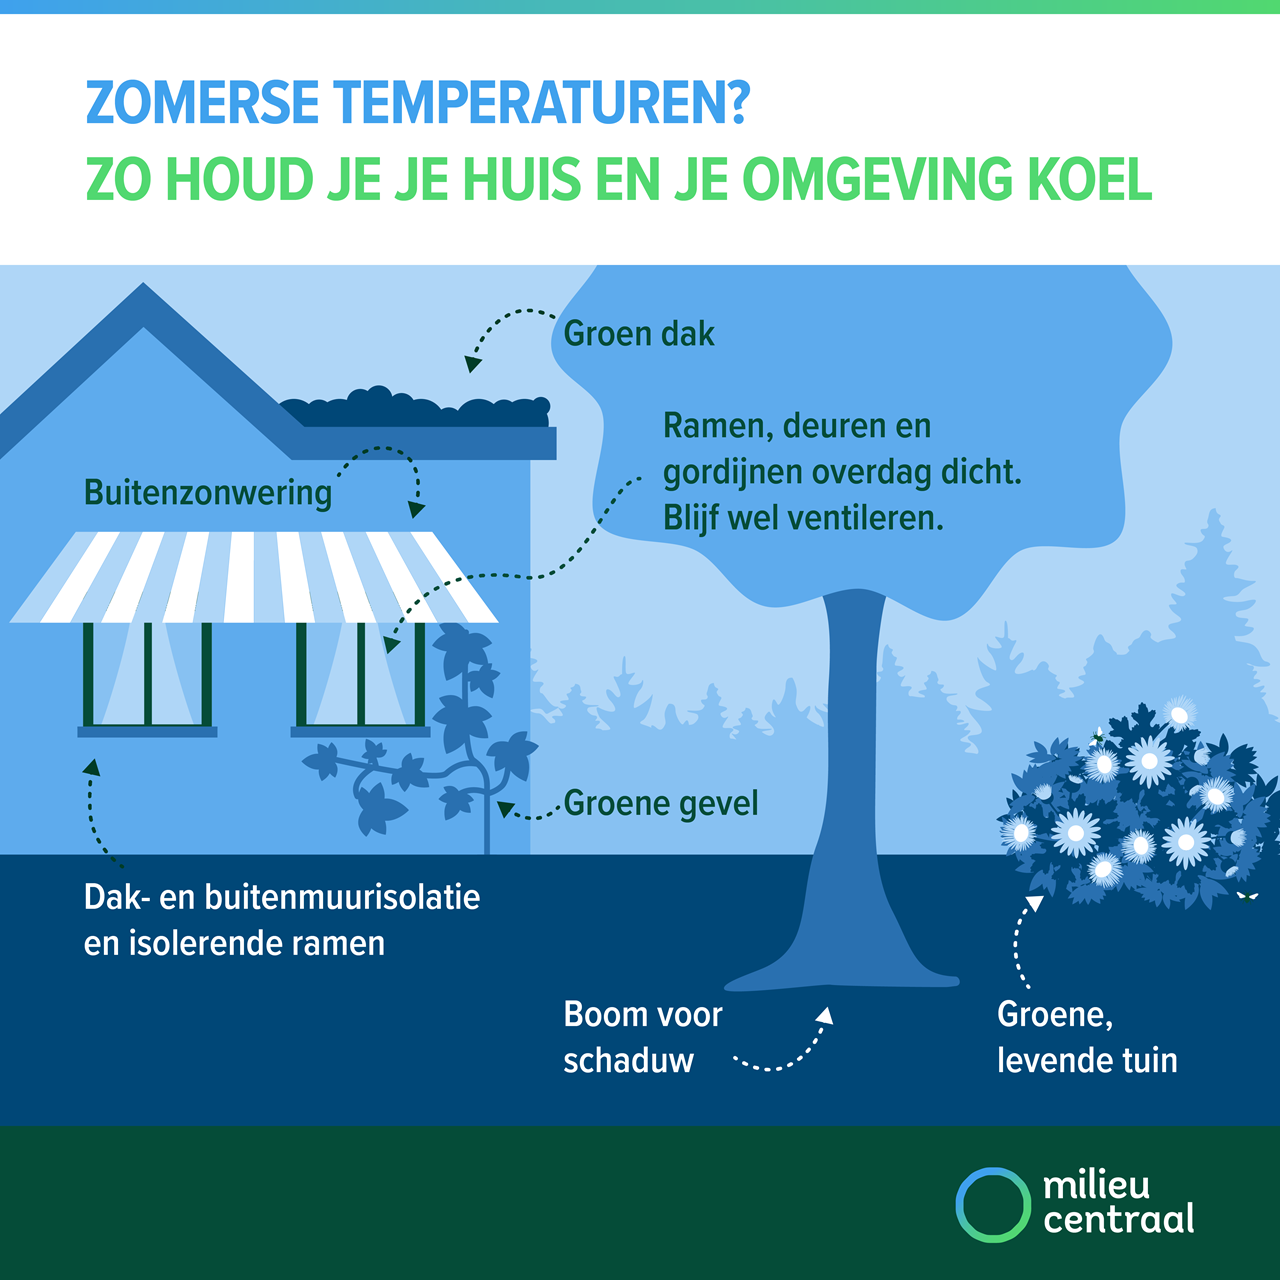 Infographic. Zomerse temperaturen? Zo houd je je huis en omgeving koel. Met buitenzonwering, isolatie, overdag dichte deuren en ramen, groen dak, boom, groene tuin, groene gevel.